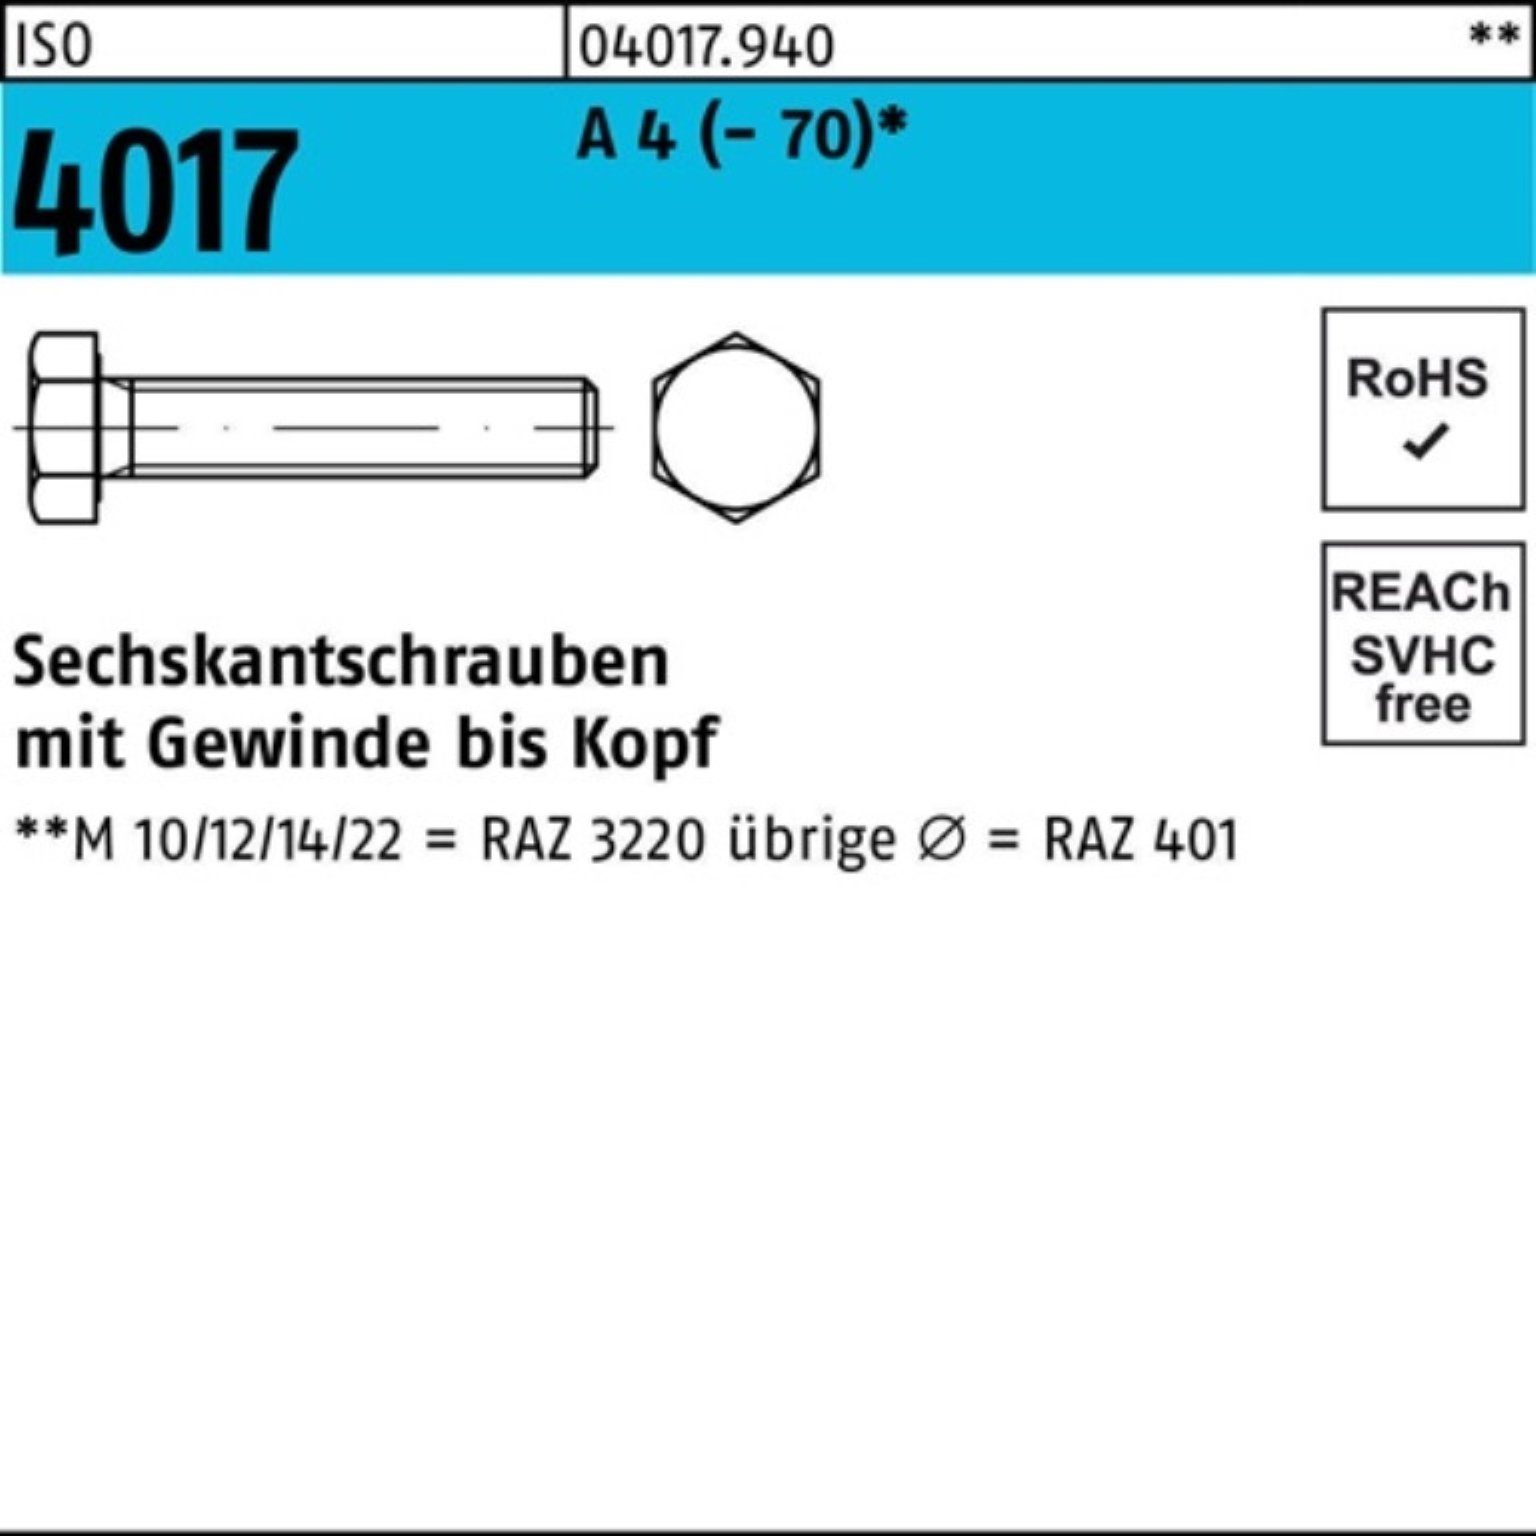 Bufab Sechskantschraube 100er Pack Sechskantschraube ISO 4017 VG M12x 25 A 4 (70) 100 Stück